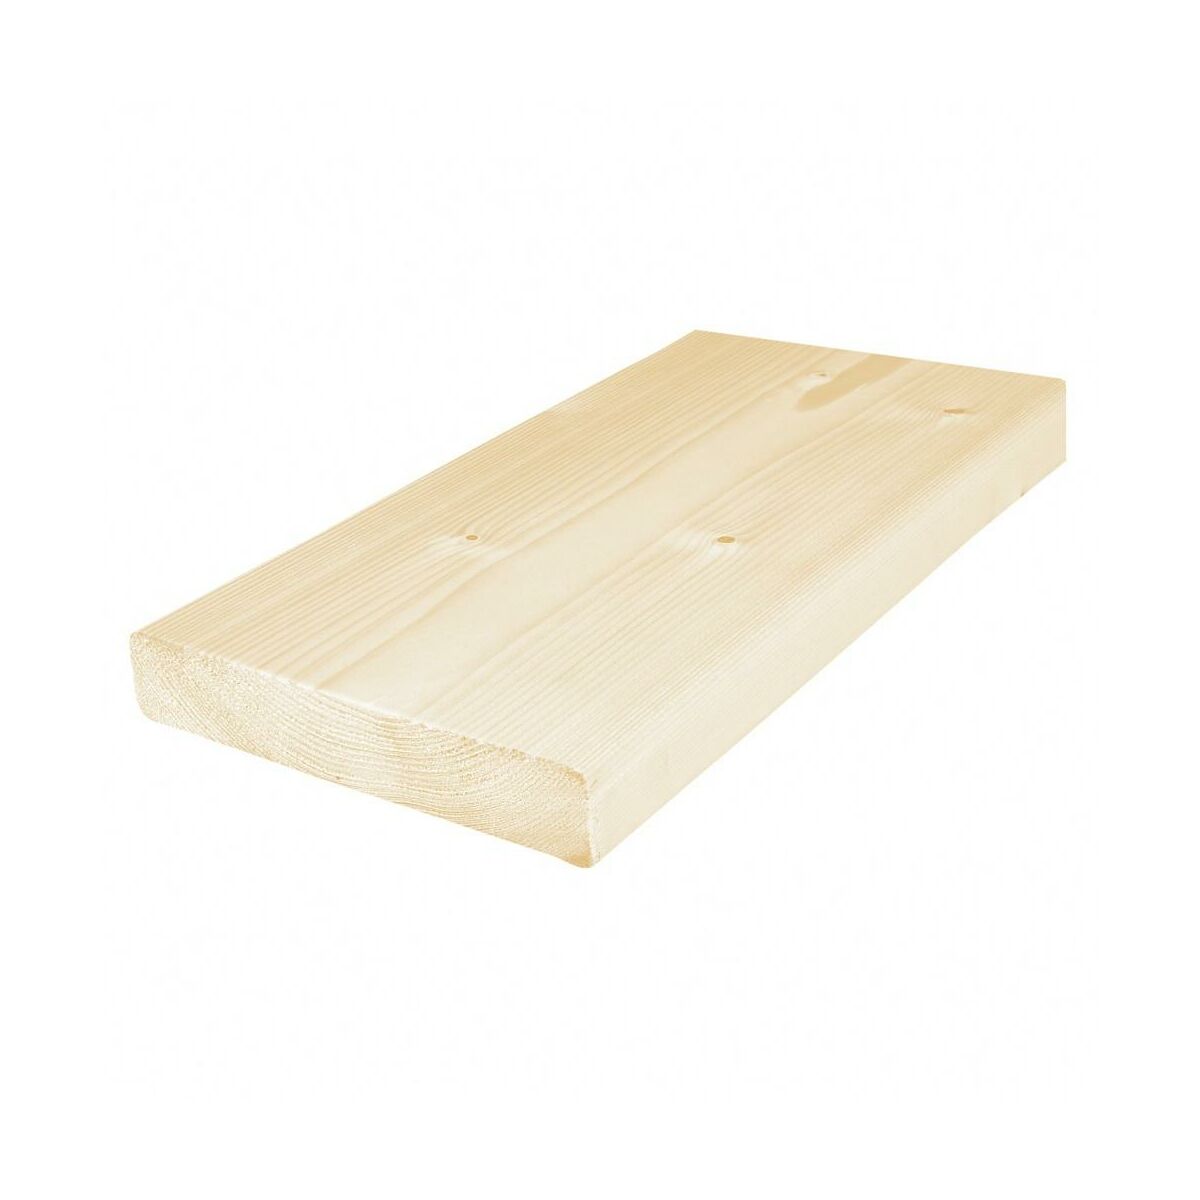 drewno-konstrukcyjne-heblowane-deski-drewno-konstrukcyjne-w